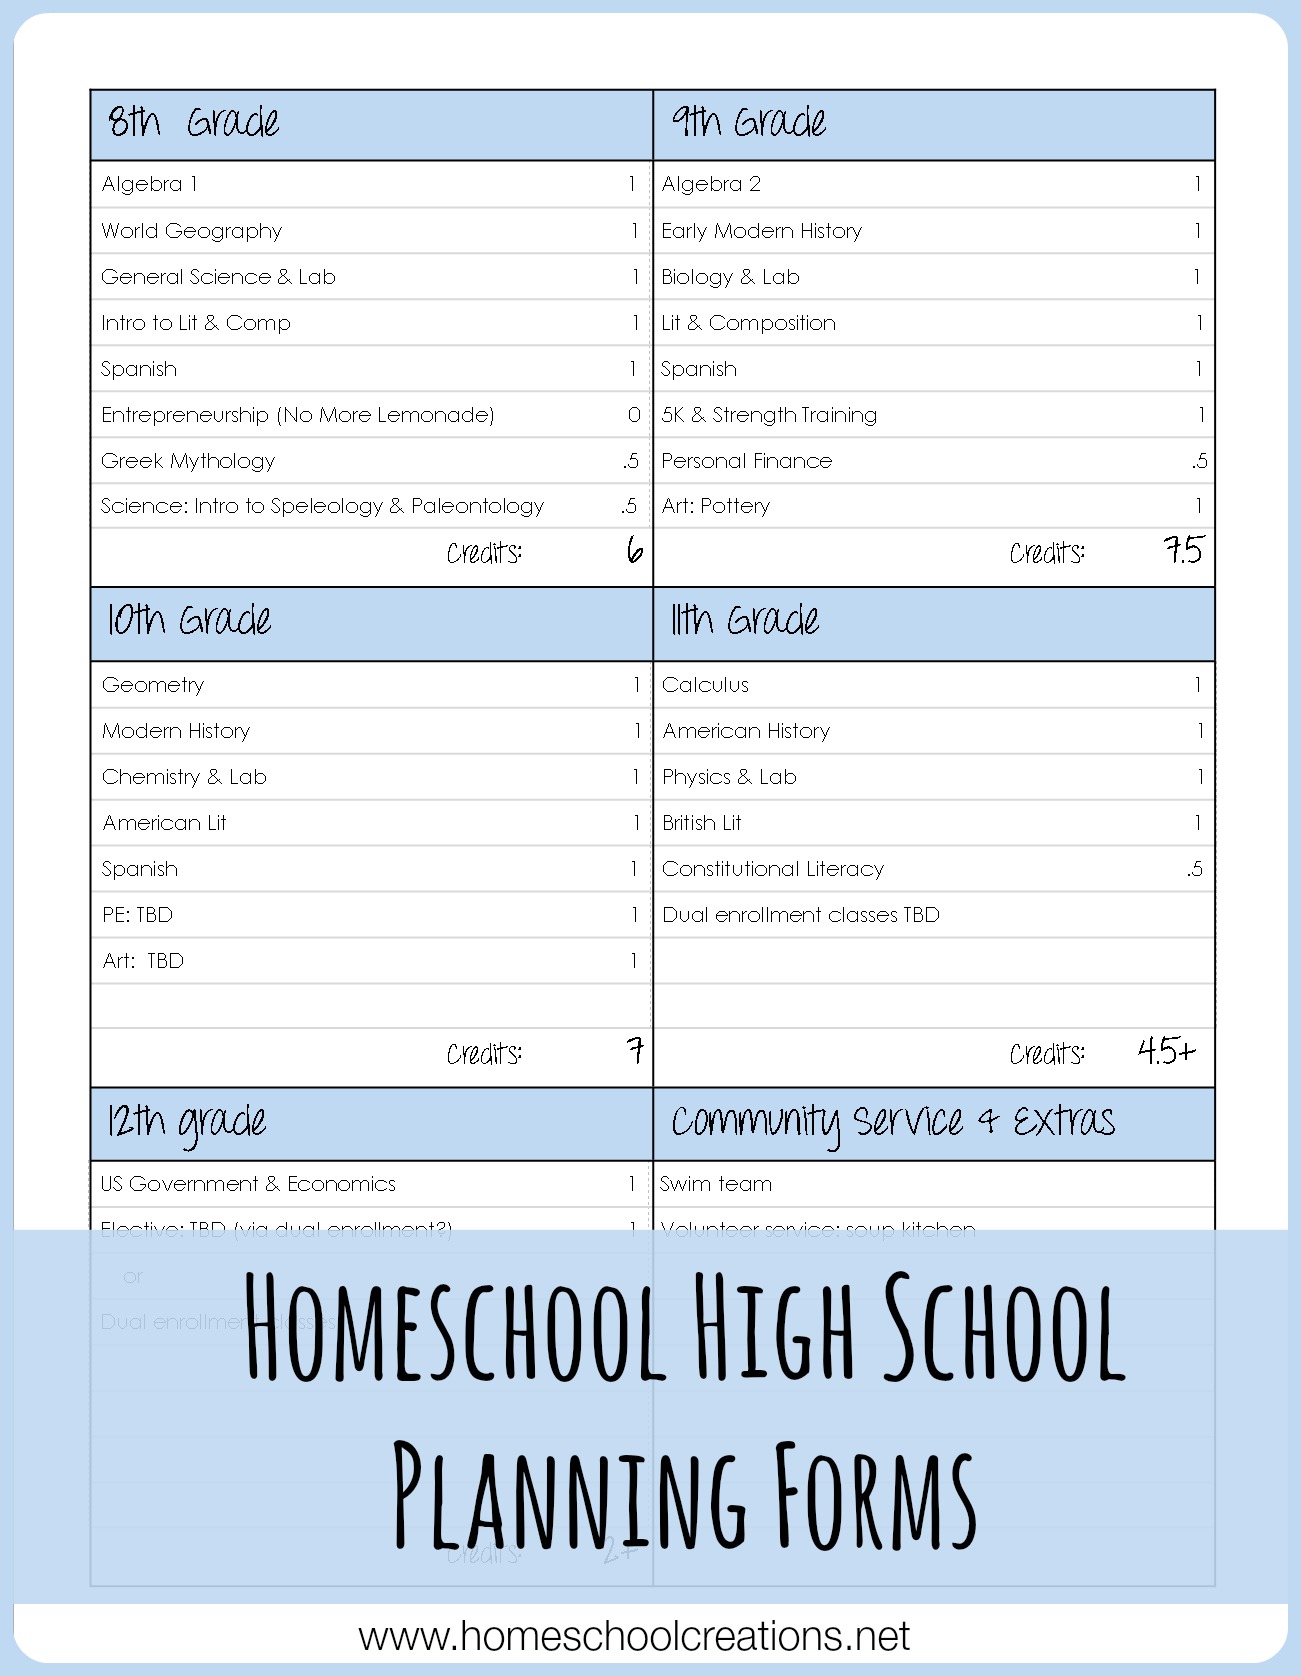 Homeschool High School Class Planning